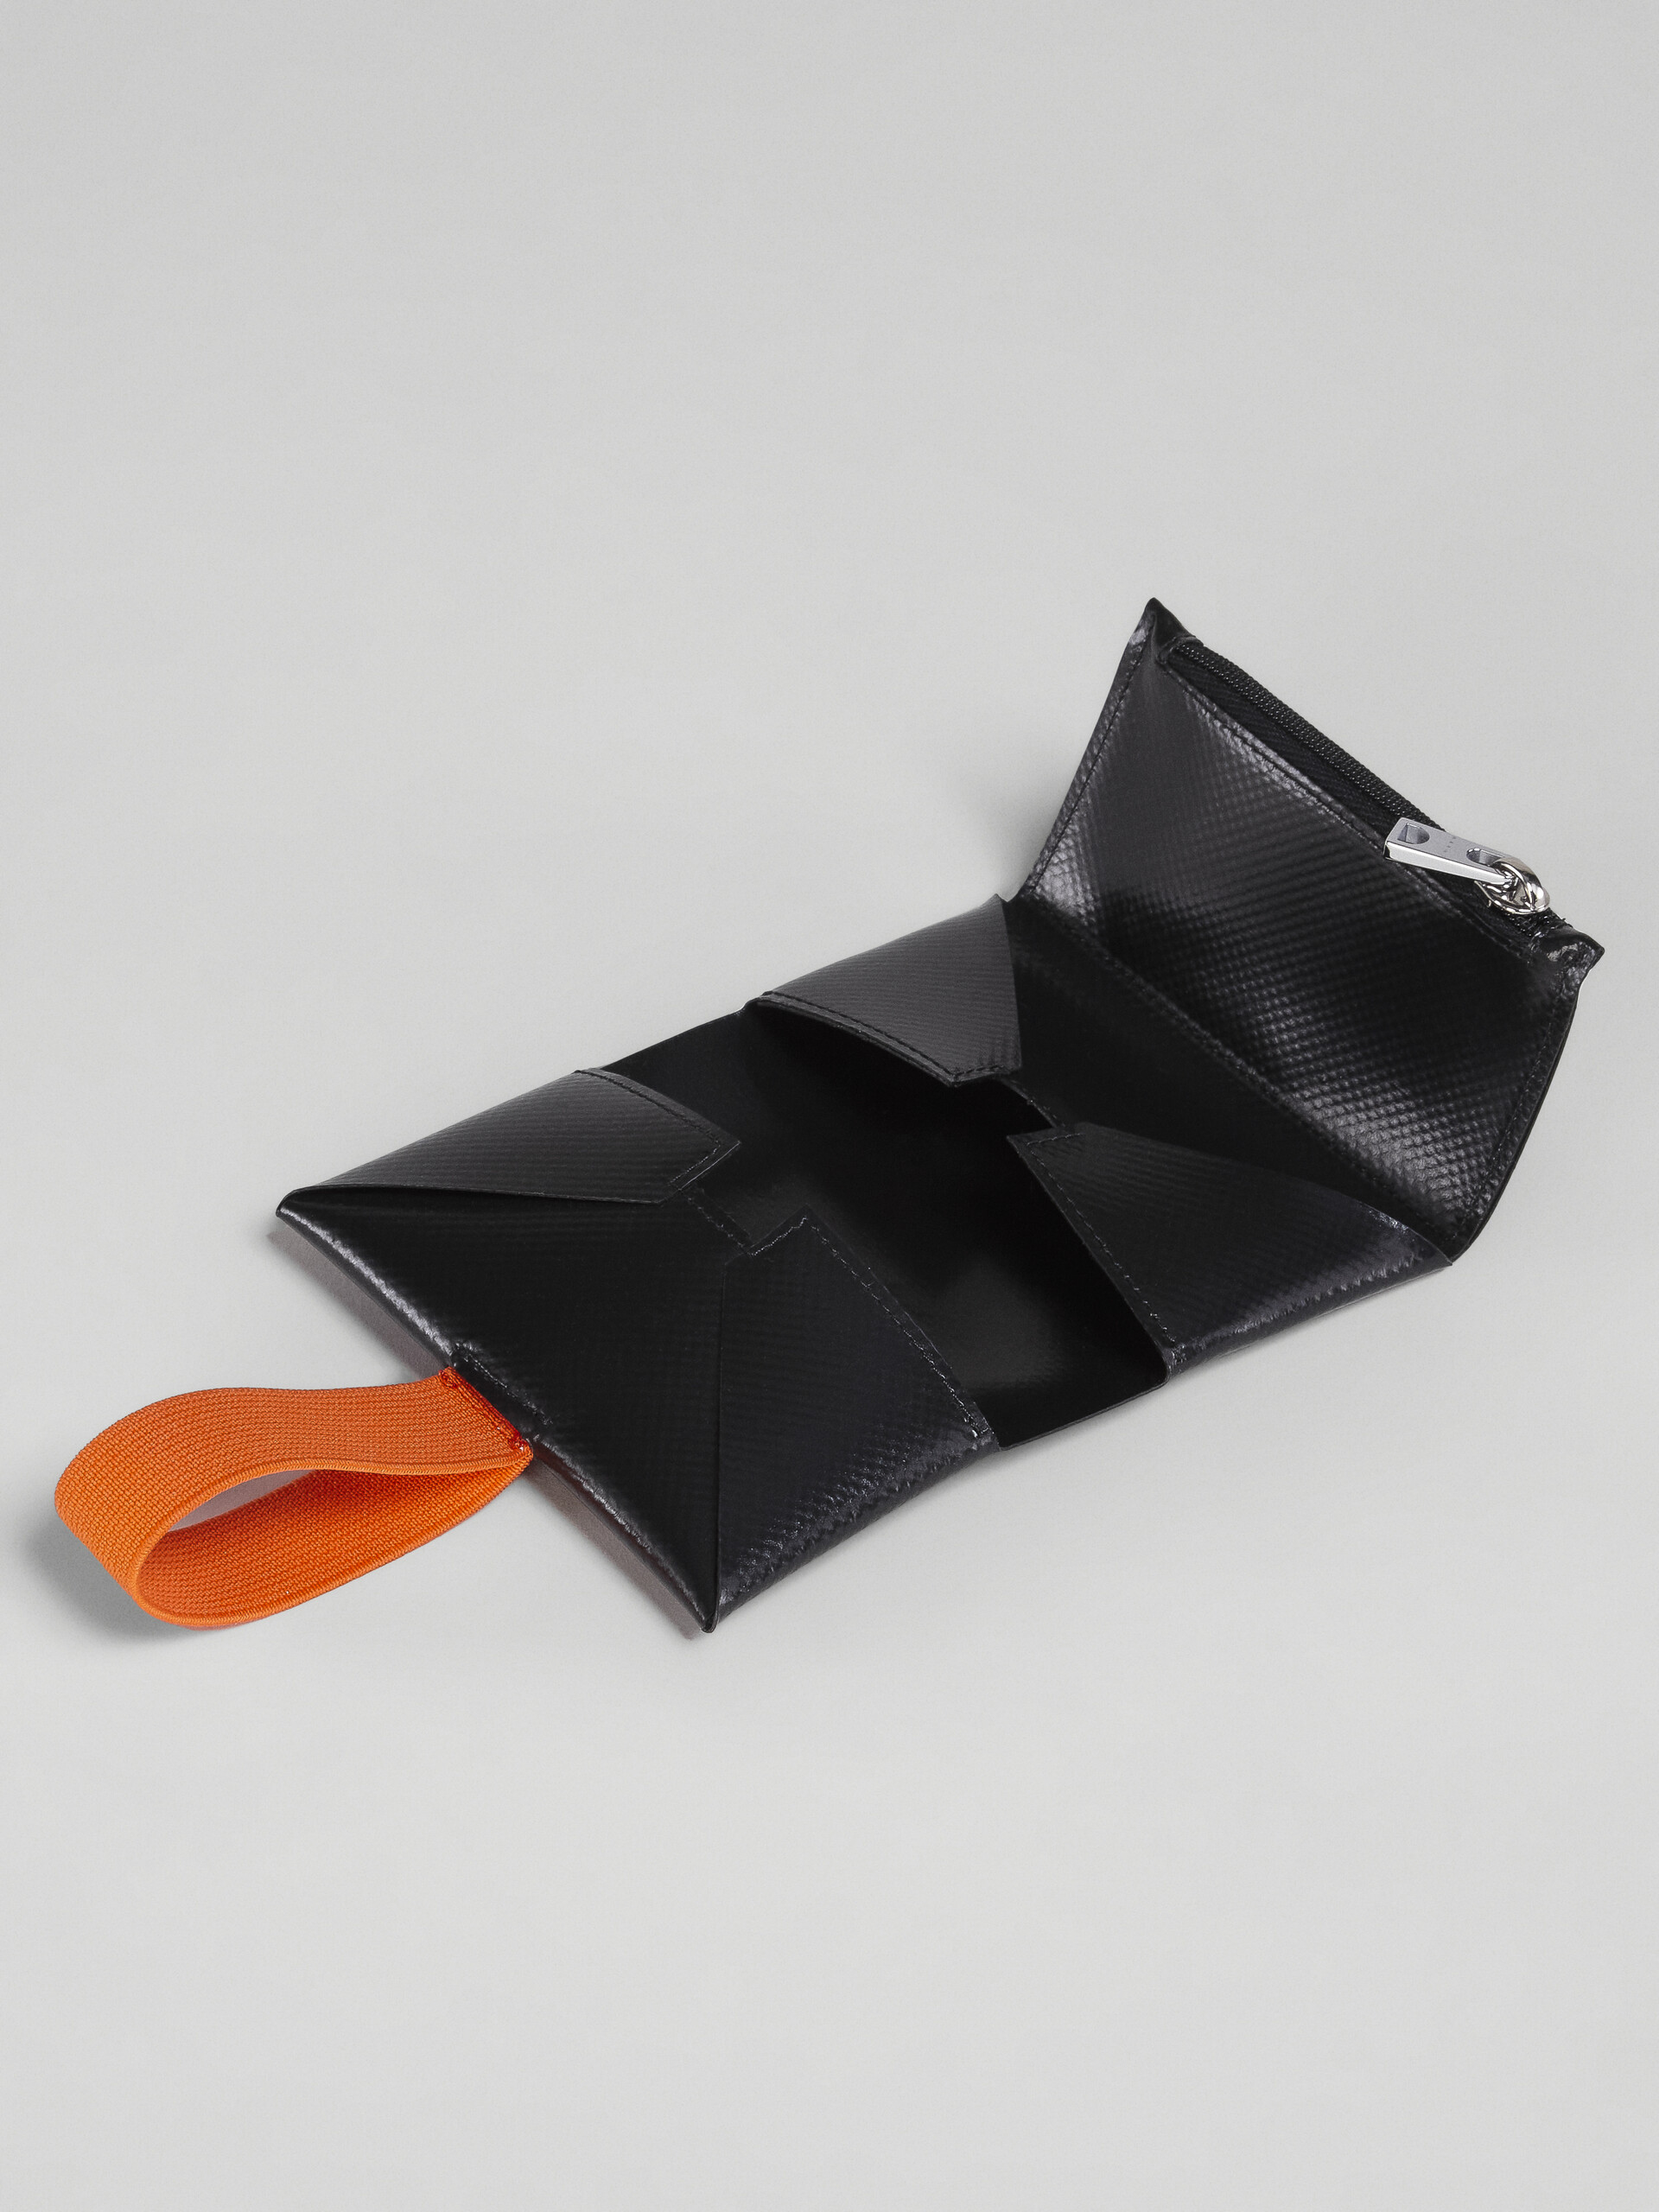 Portafoglio origami nero e arancio - Portafogli - Image 5